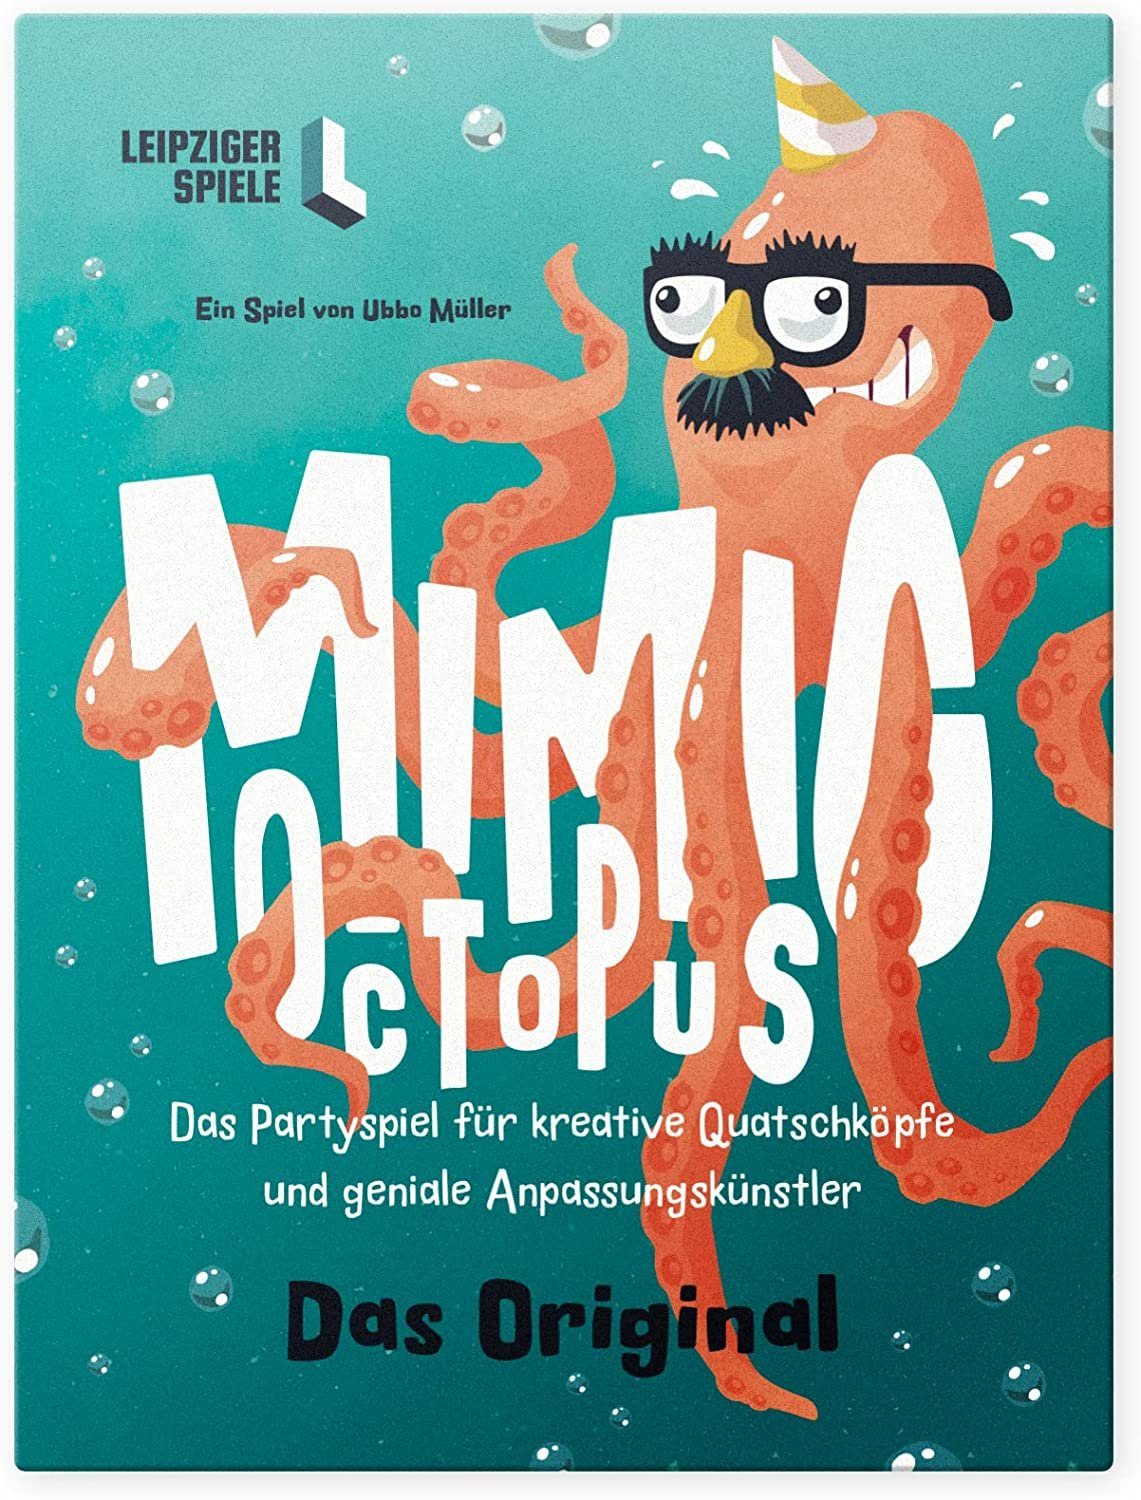 Leipziger Spiele Spiel, Partyspiel Mimic Octopus – Das kommunikative Partyspiel für Erwachsene und Jugendliche (Das Original)